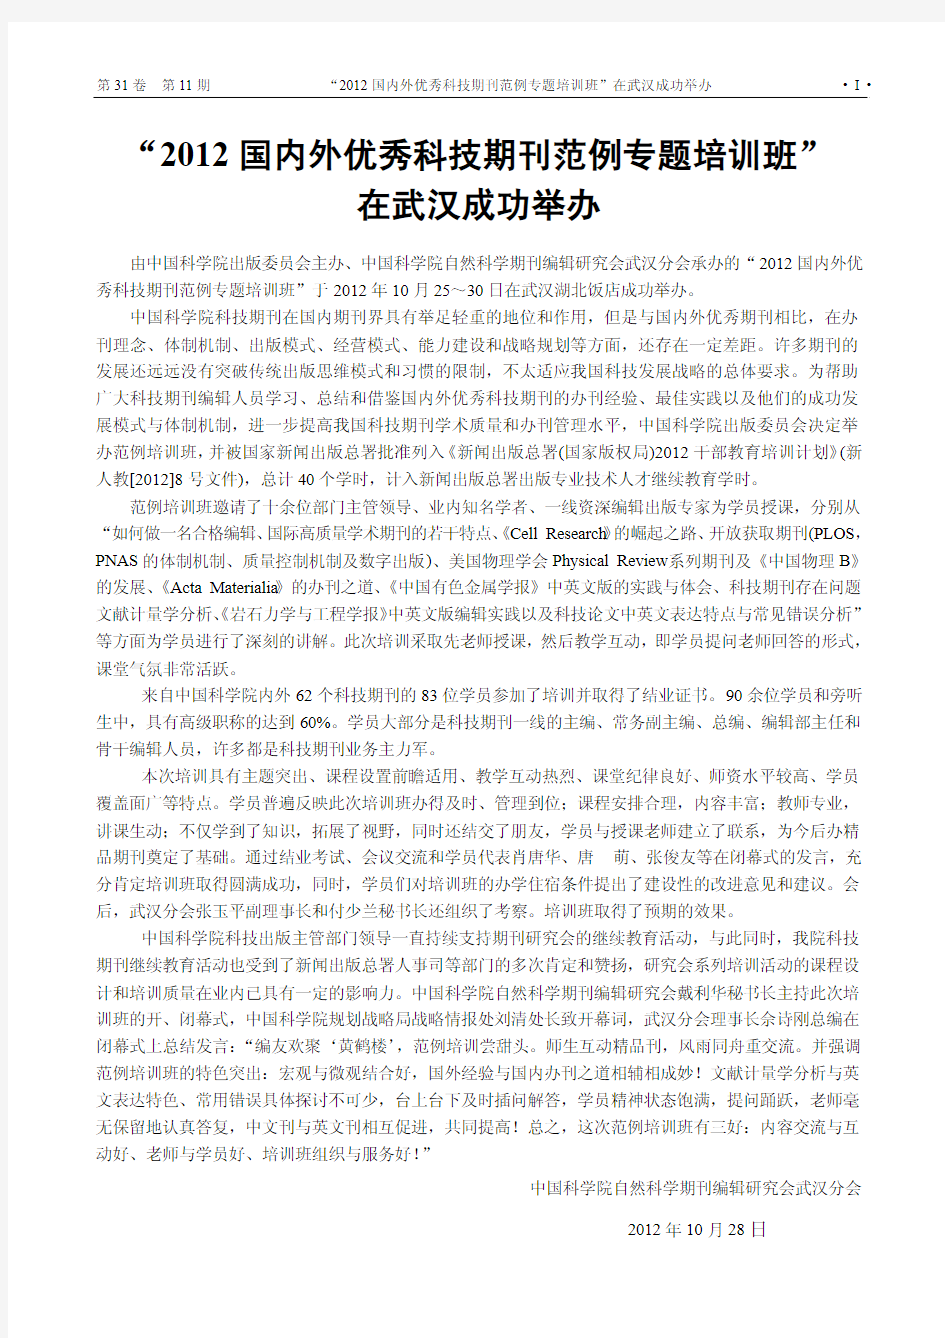 2012 国内外优秀科技期刊范例专题培训班” 在武汉成功举办